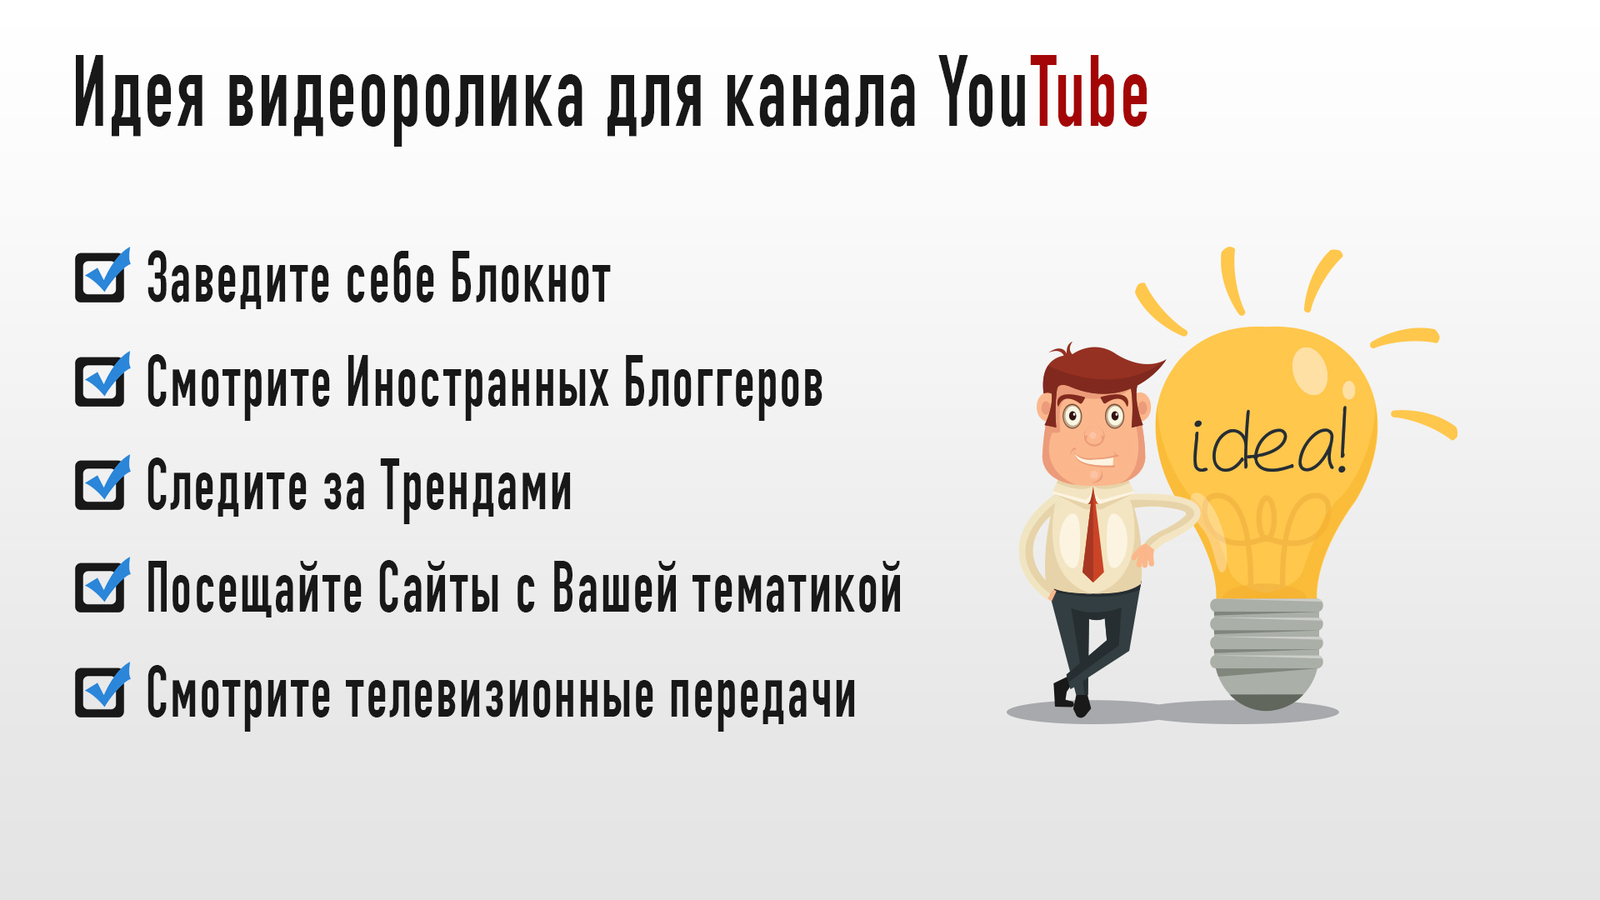 Как сделать видео популярным на YouTube: инструкция по применению